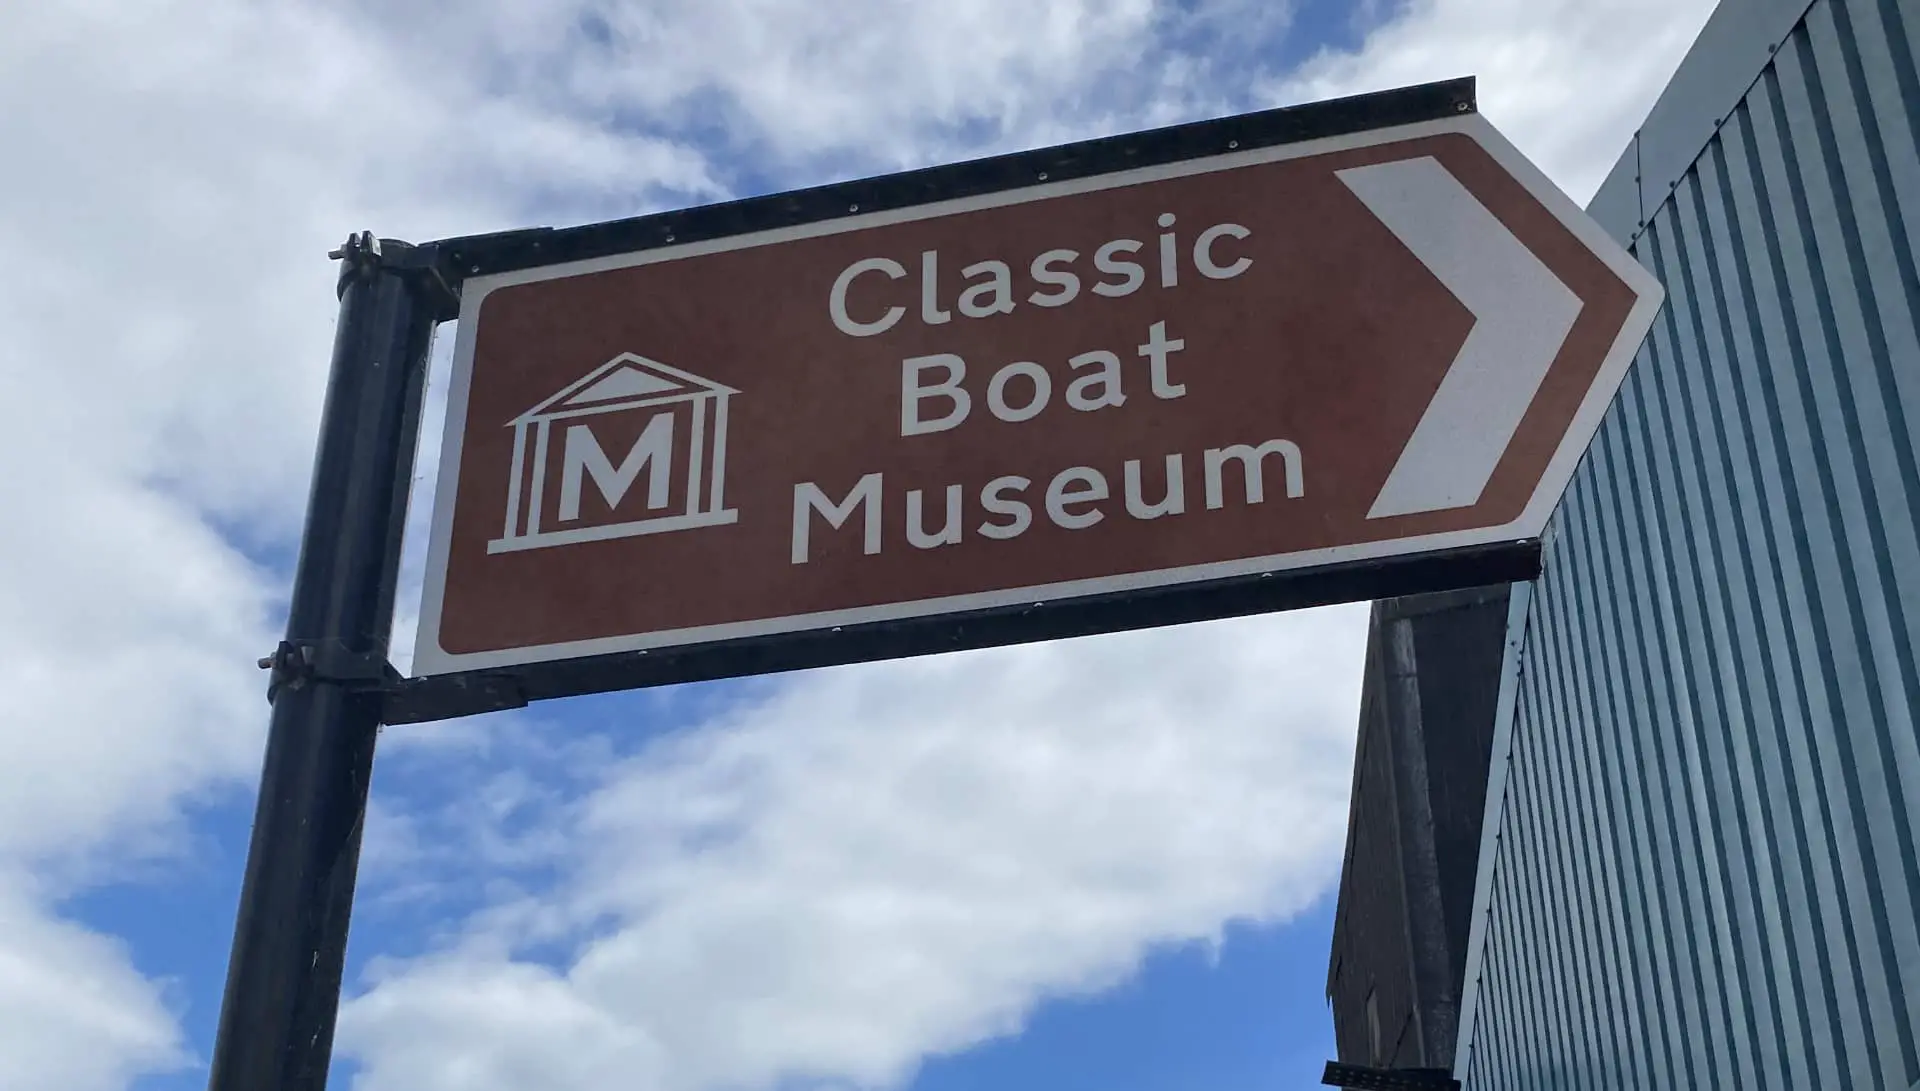 Classic Boat Museum signage